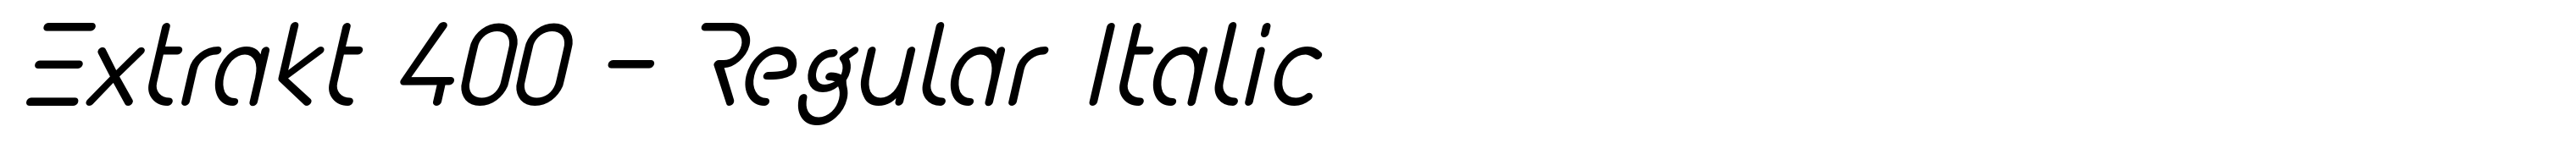 Extrakt 400 - Regular Italic